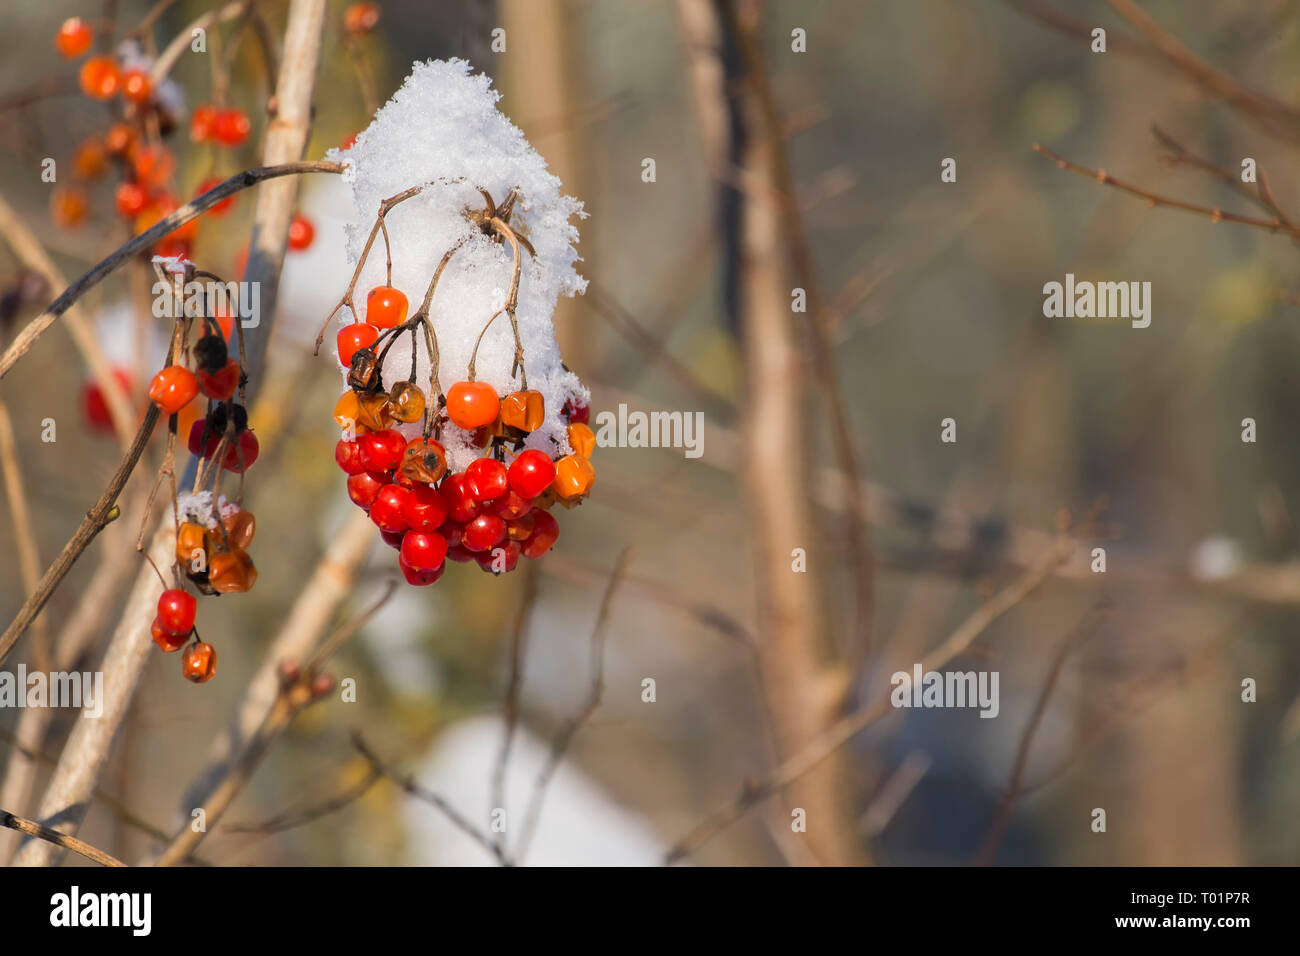 Red berries of viburnum covered with snow (Viburnum opulus) Stock Photo